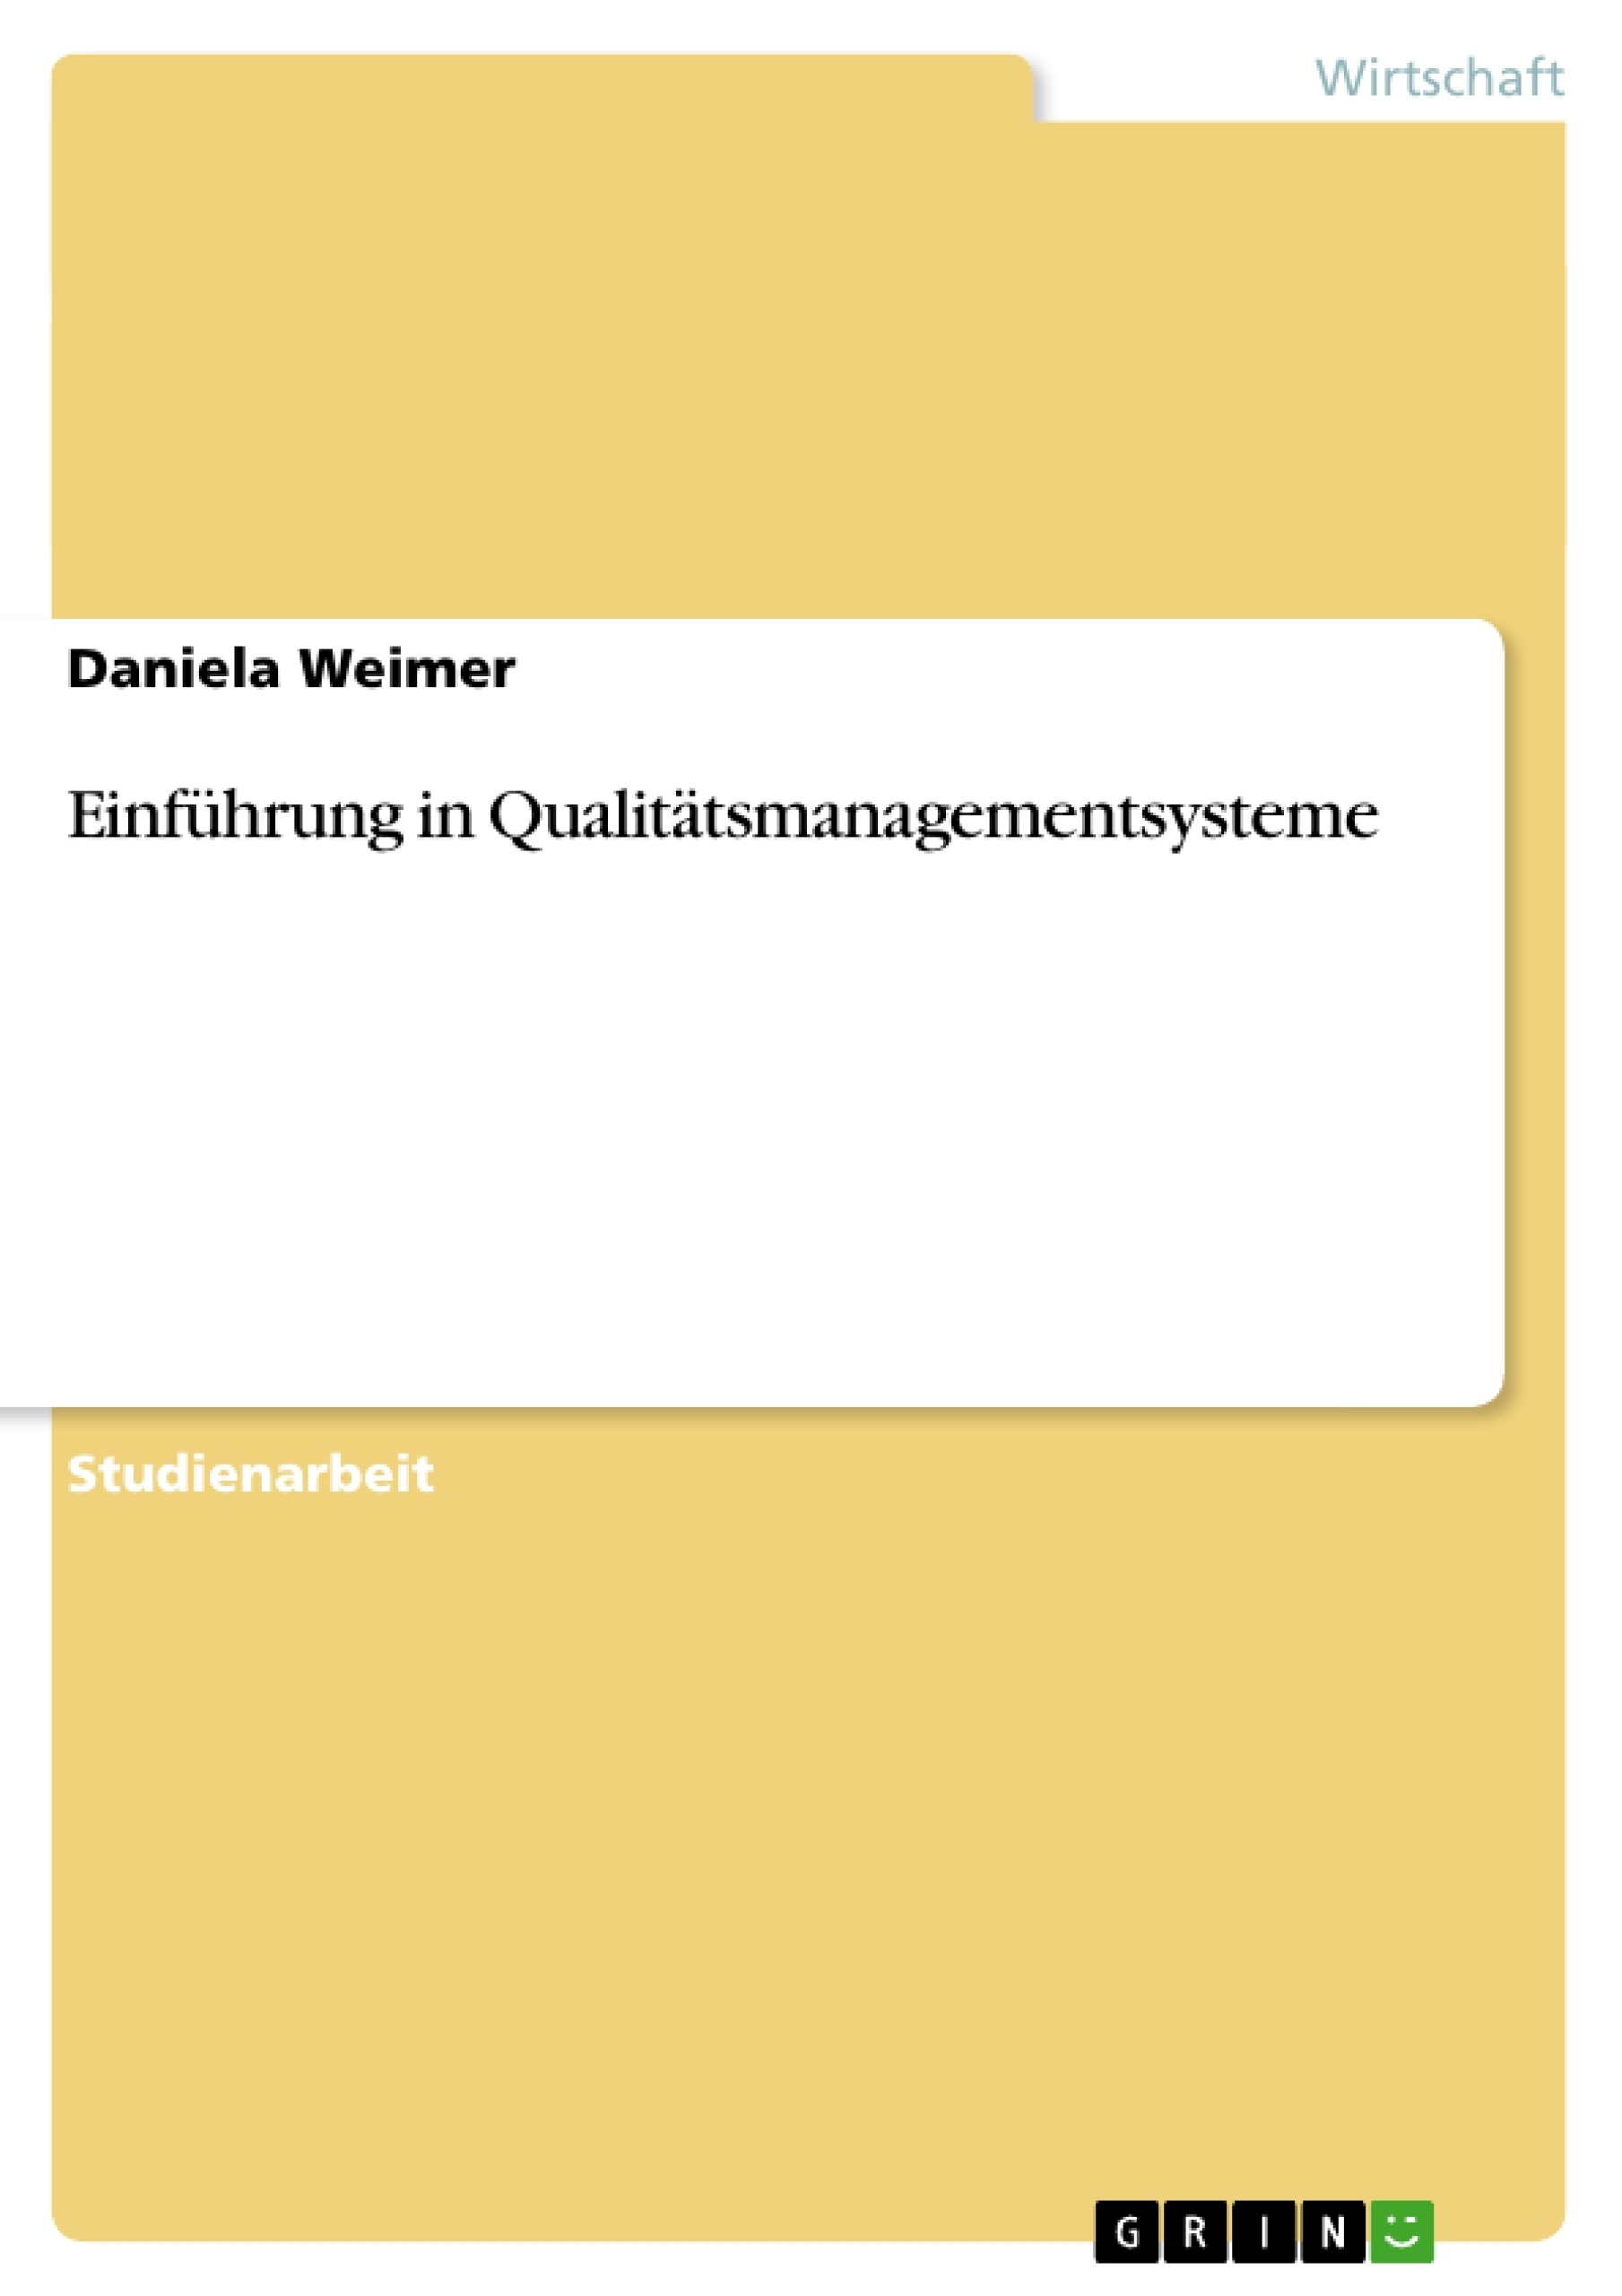 Title: Einführung in Qualitätsmanagementsysteme